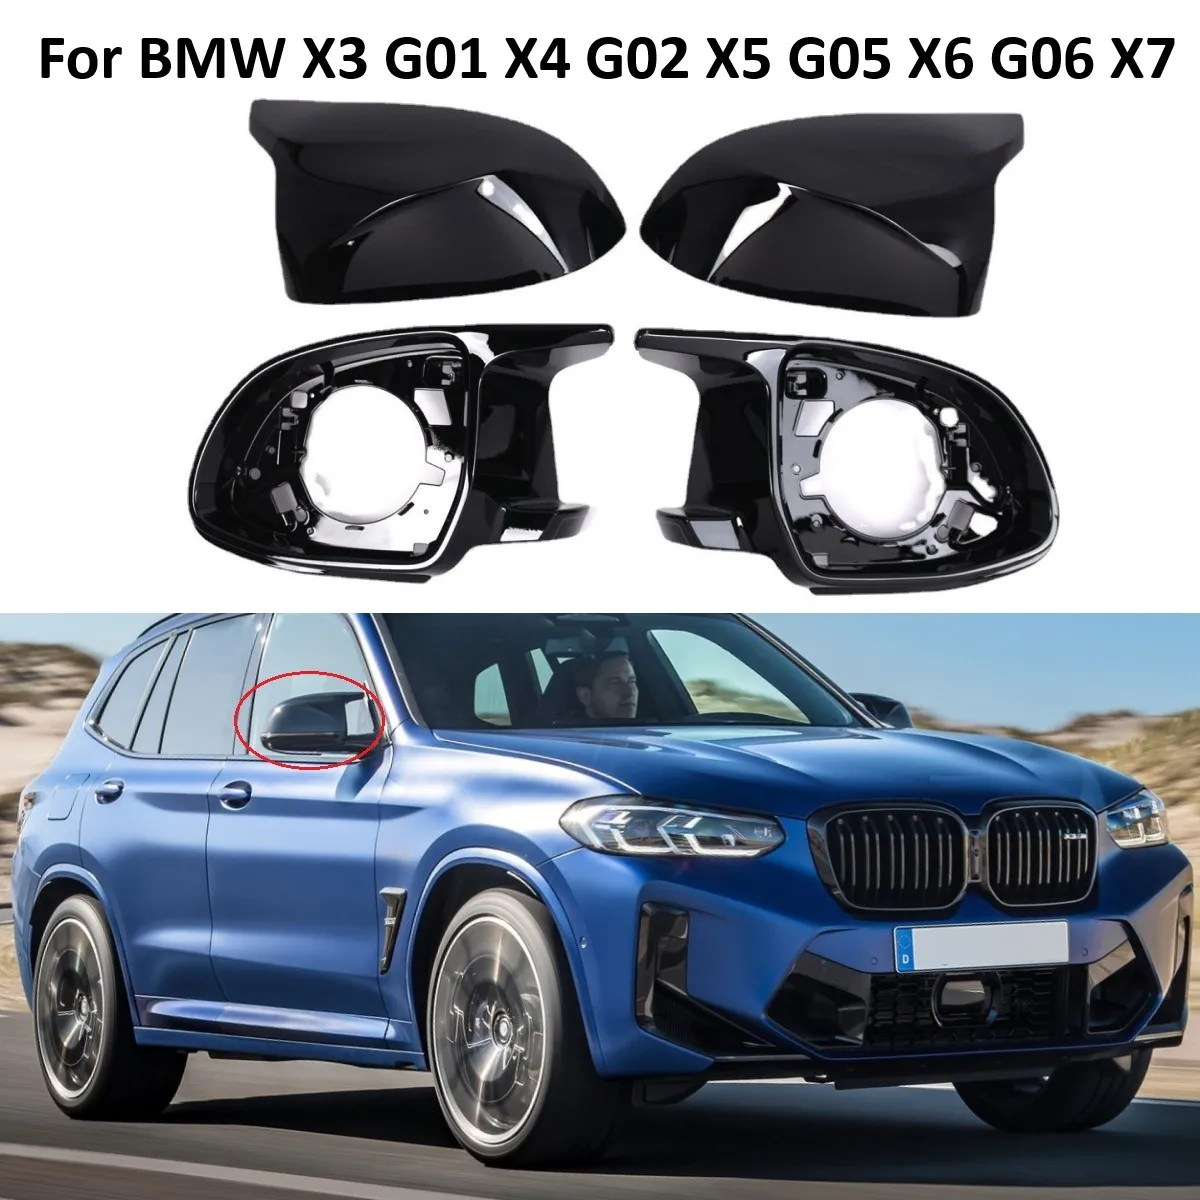 

4 шт. глянцевая черная опорная Накладка для автомобильного зеркала, комплект накладок и крышек для зеркала в сборе для BMW X3 G01 X4 G02 X5 G05 X6 G06 X7 G07 19-23